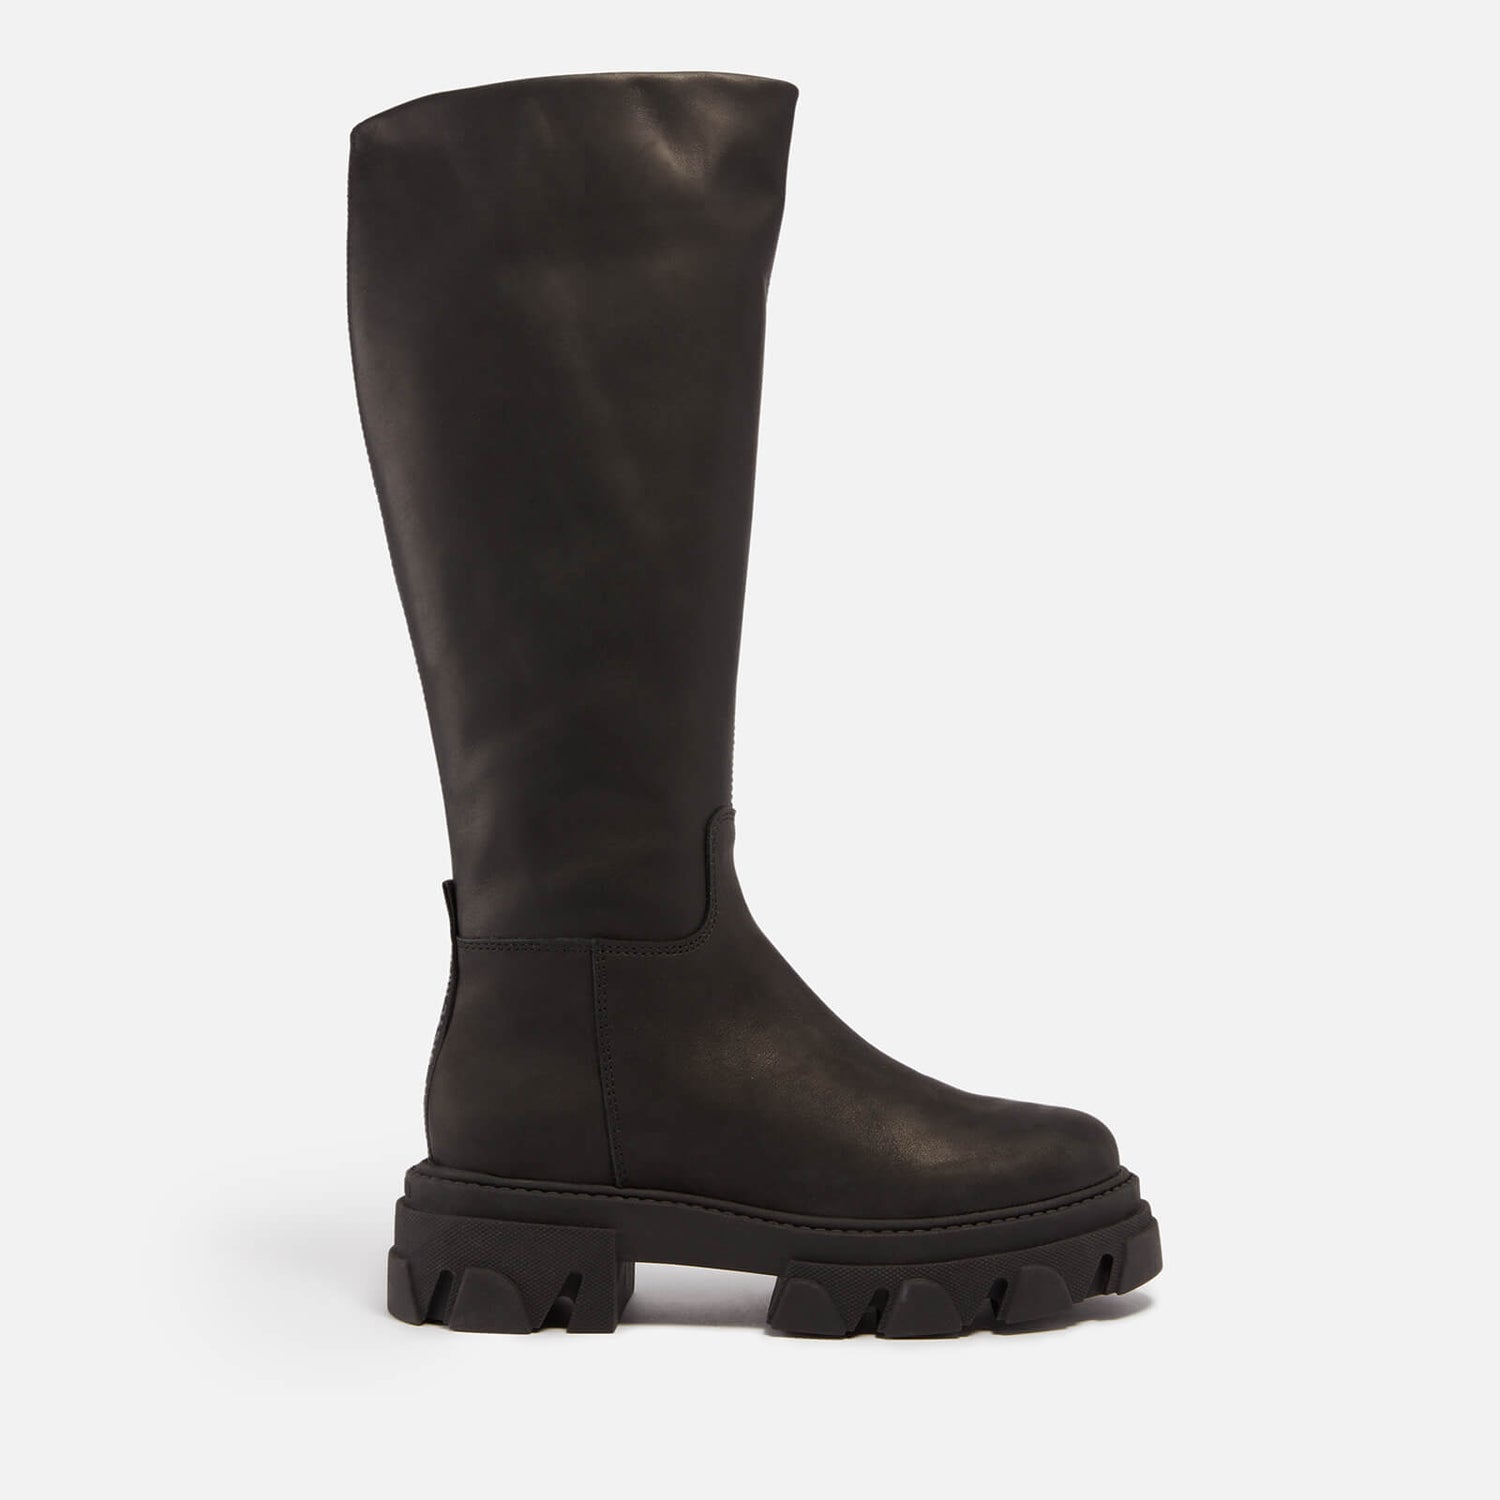 Steve Madden Mana Leather Knee-High Platform Boots - UK 3